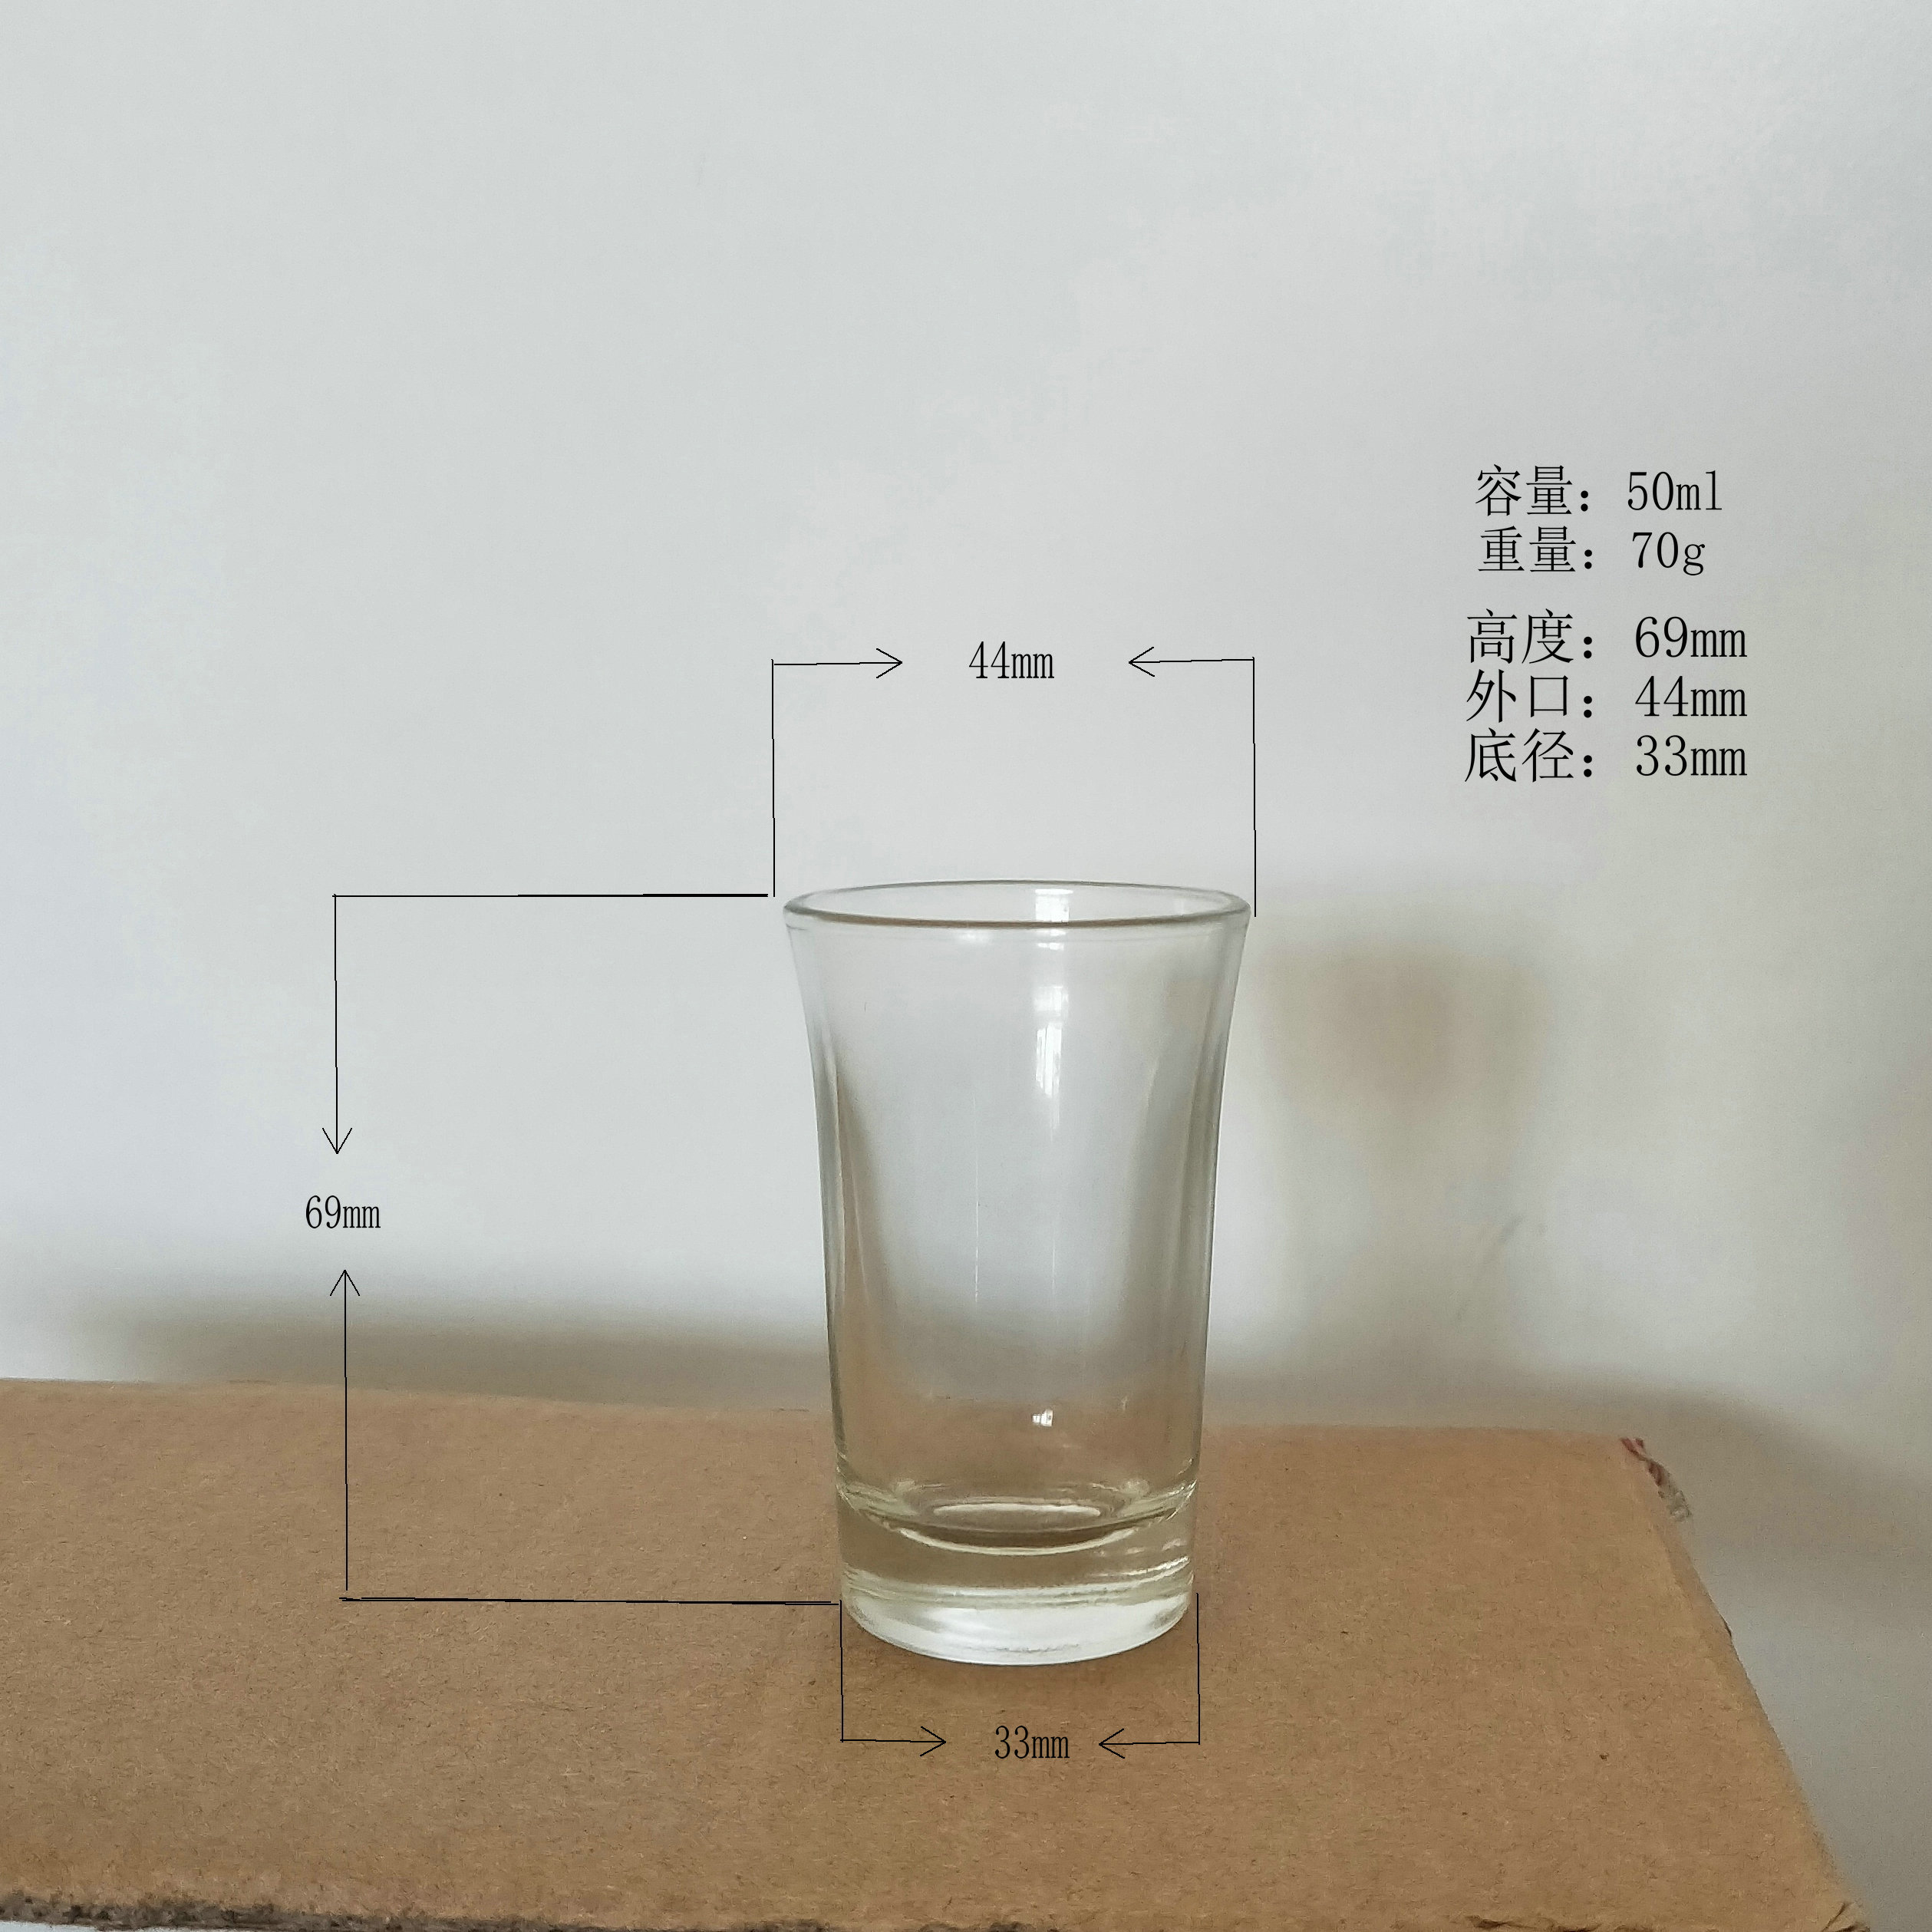 礼品杯 玻璃制品生产厂家批发定制各种玻璃瓶玻璃包装蜡台杯 广告杯 啤酒杯 玻璃杯 隆安玻璃杯 水杯8